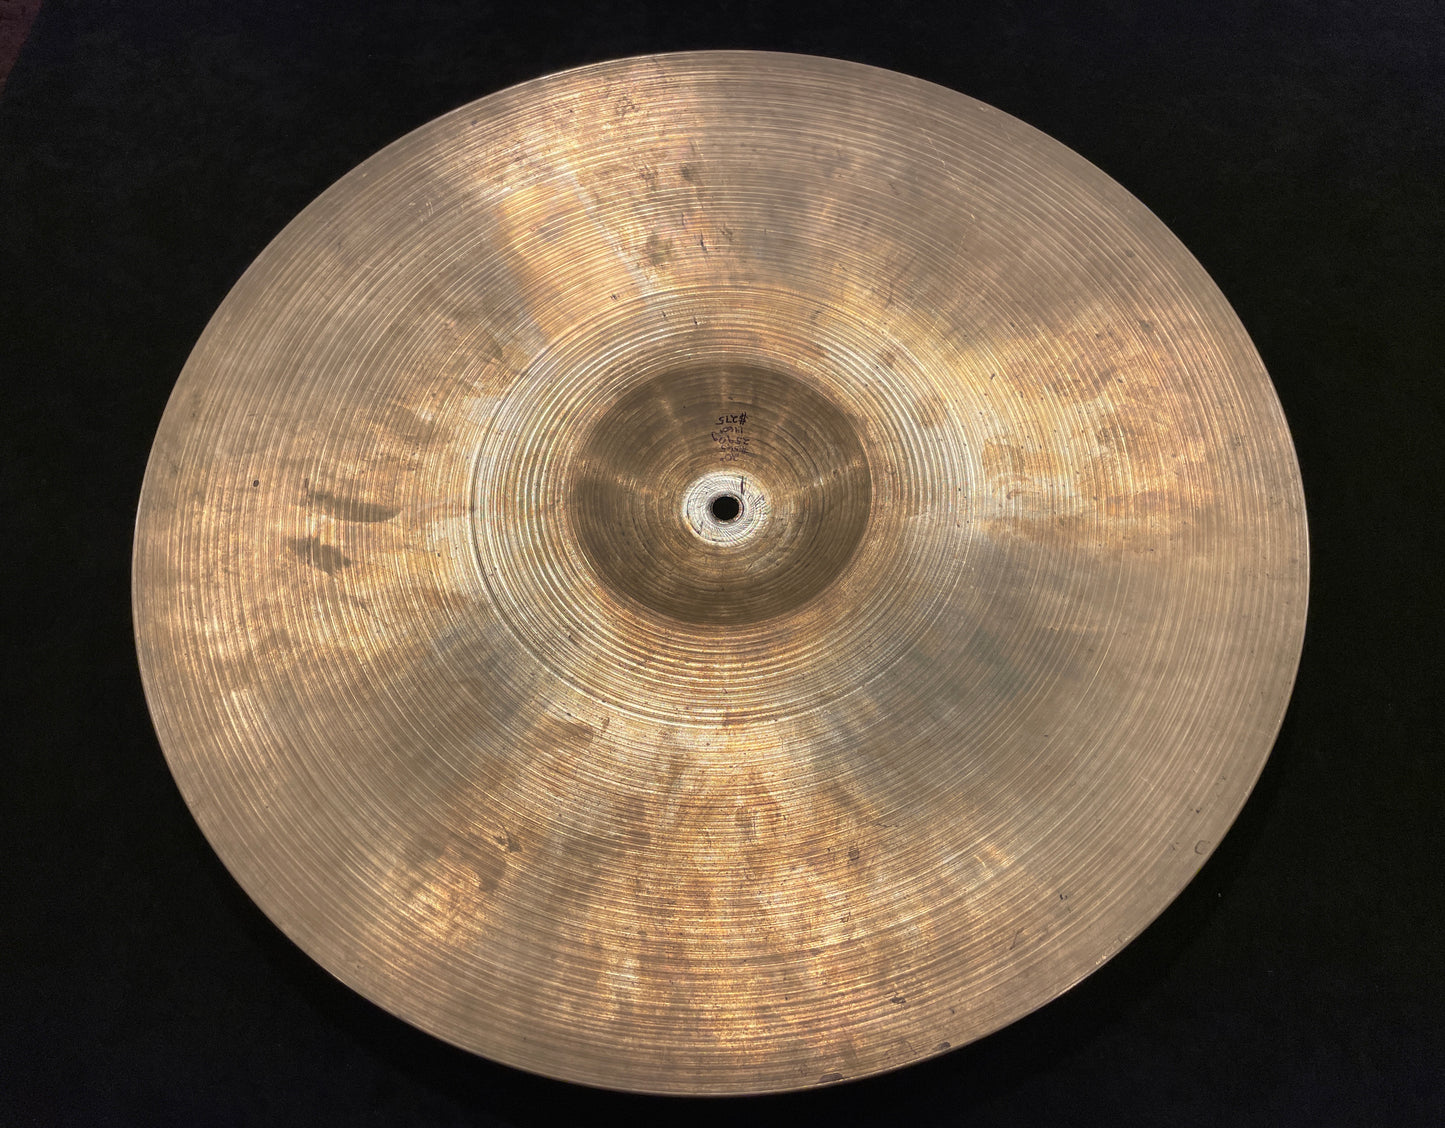 20" Zildjian A 1960s Ride Cymbal 2590g #565 *Video Demo*